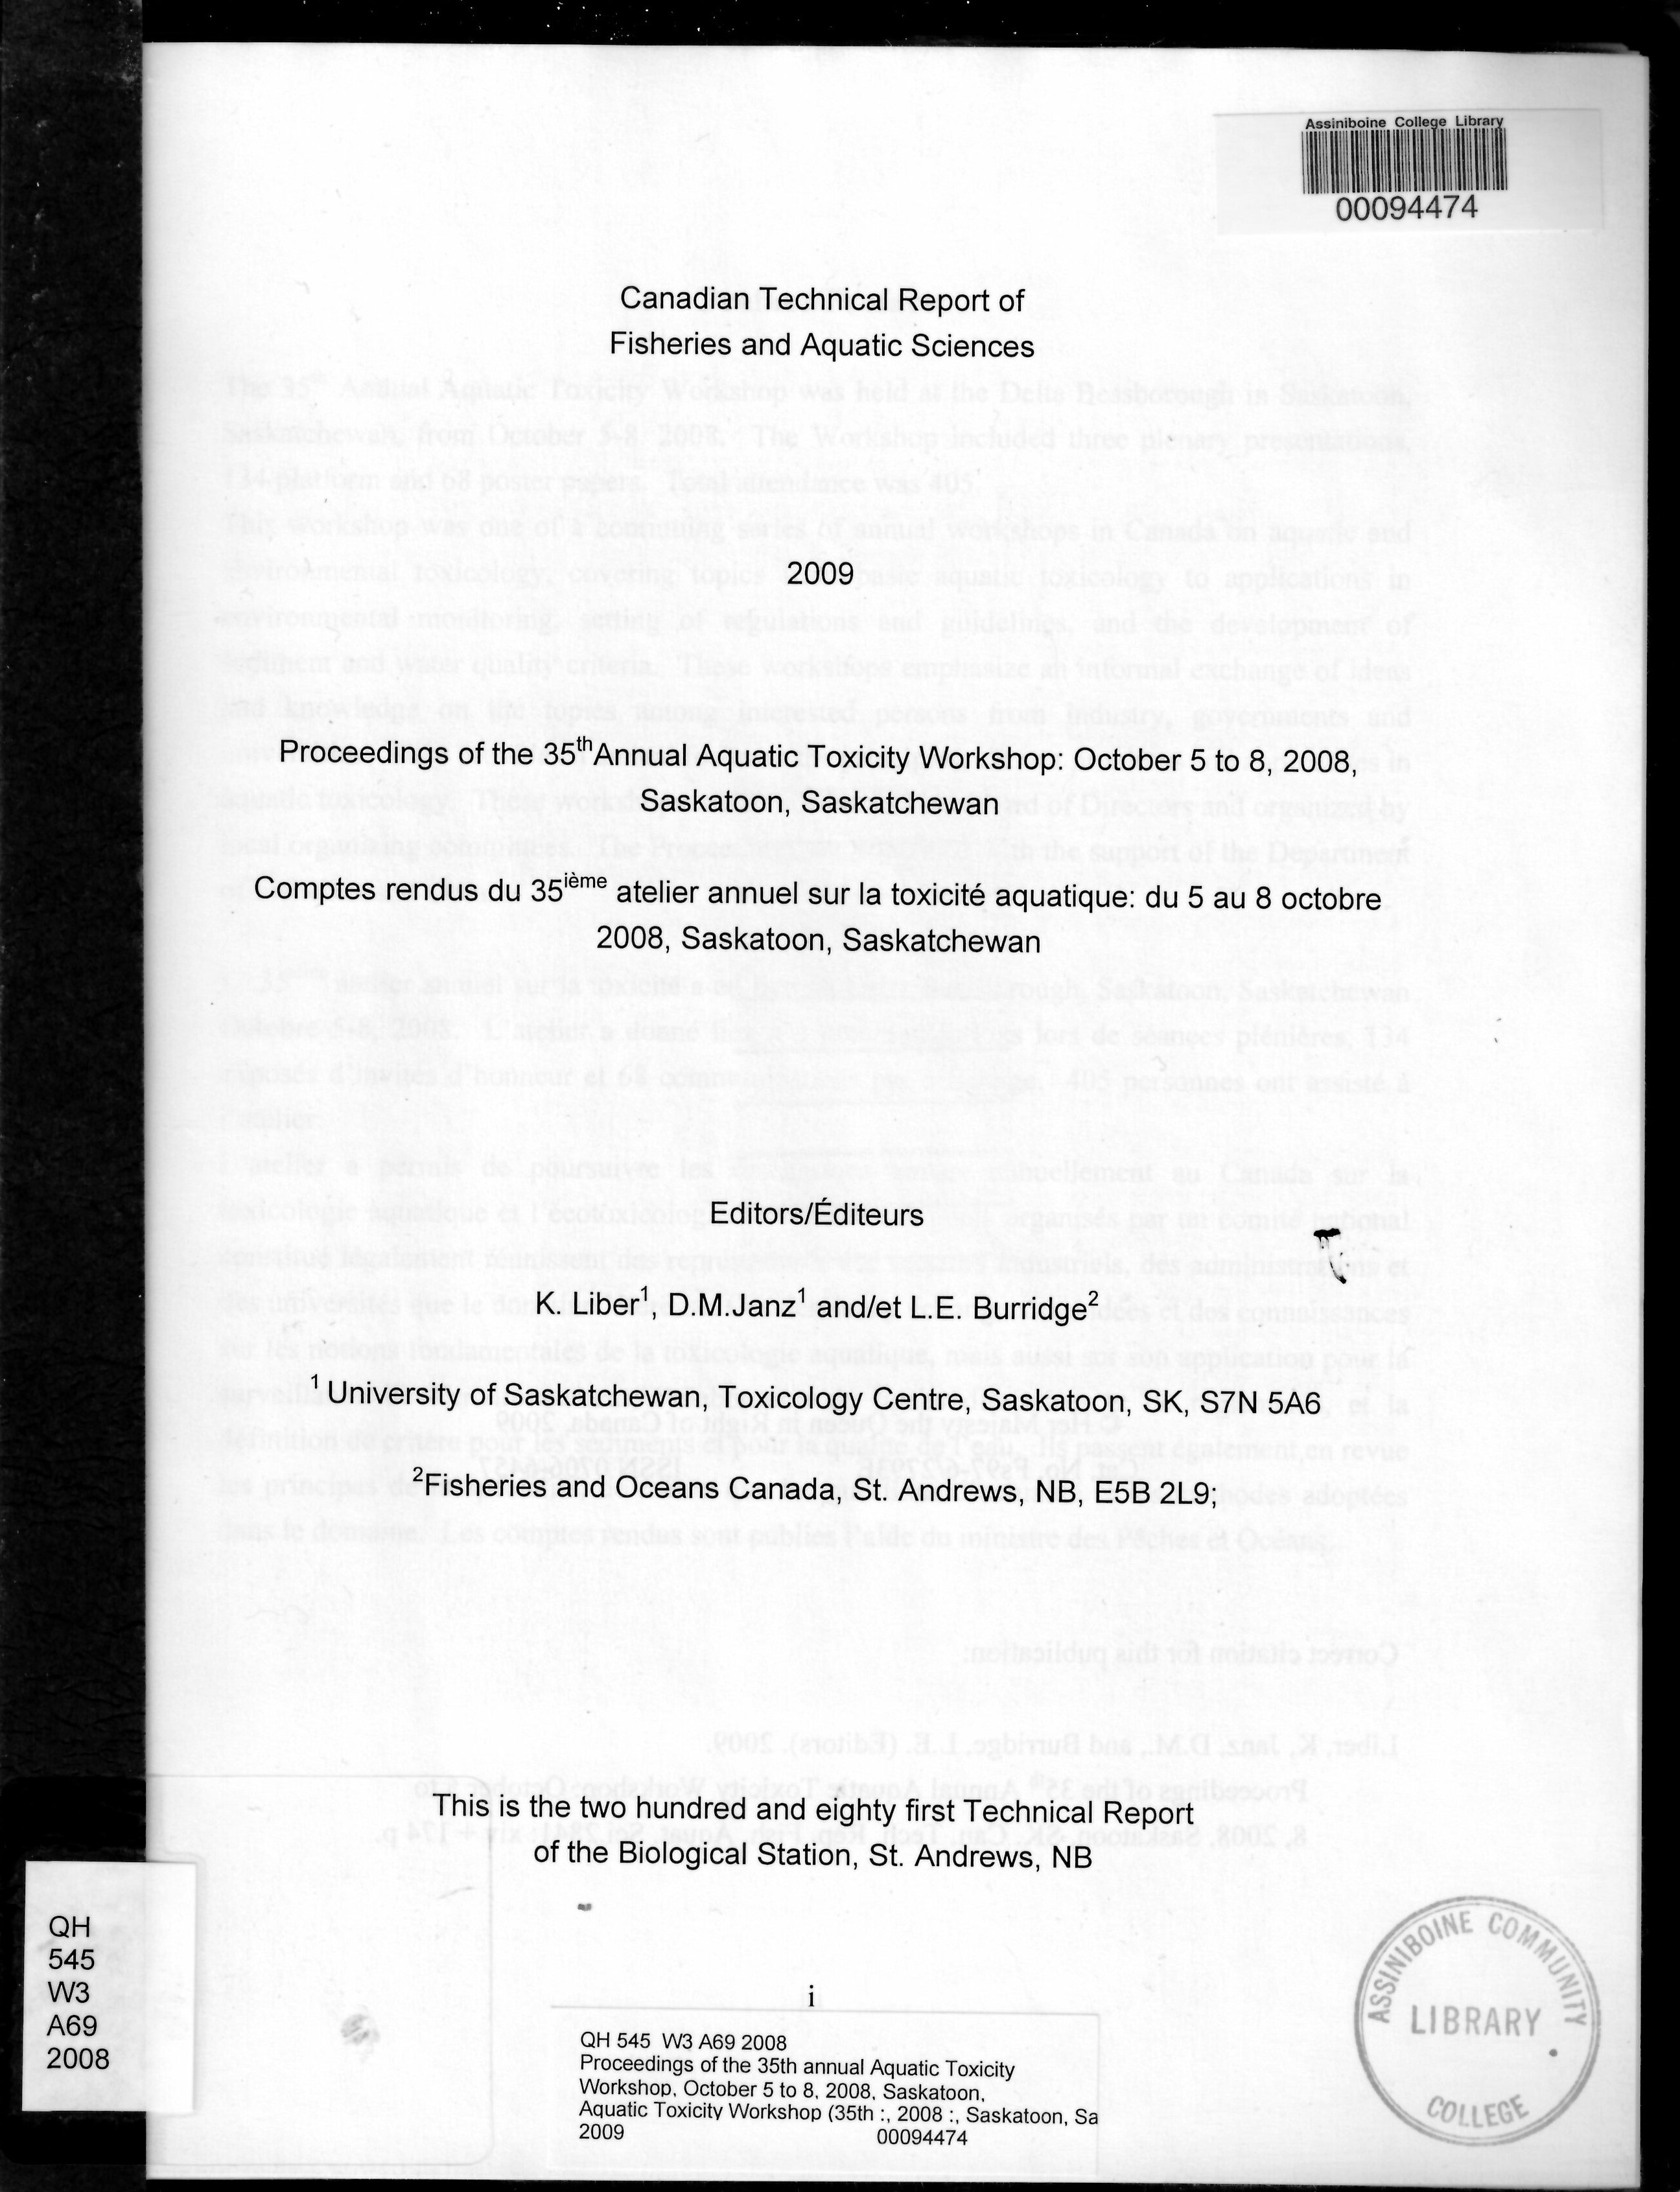 Proceedings of the 35th annual Aquatic Toxicity Workshop, October 5 to 8, 2008, Saskatoon, Saskatchewan = Comptes rendus du 35ième atelier annuel sur la toxicité aquatique, du 5 au 8 octobre 2008, Saskatoon, Saskatchewan